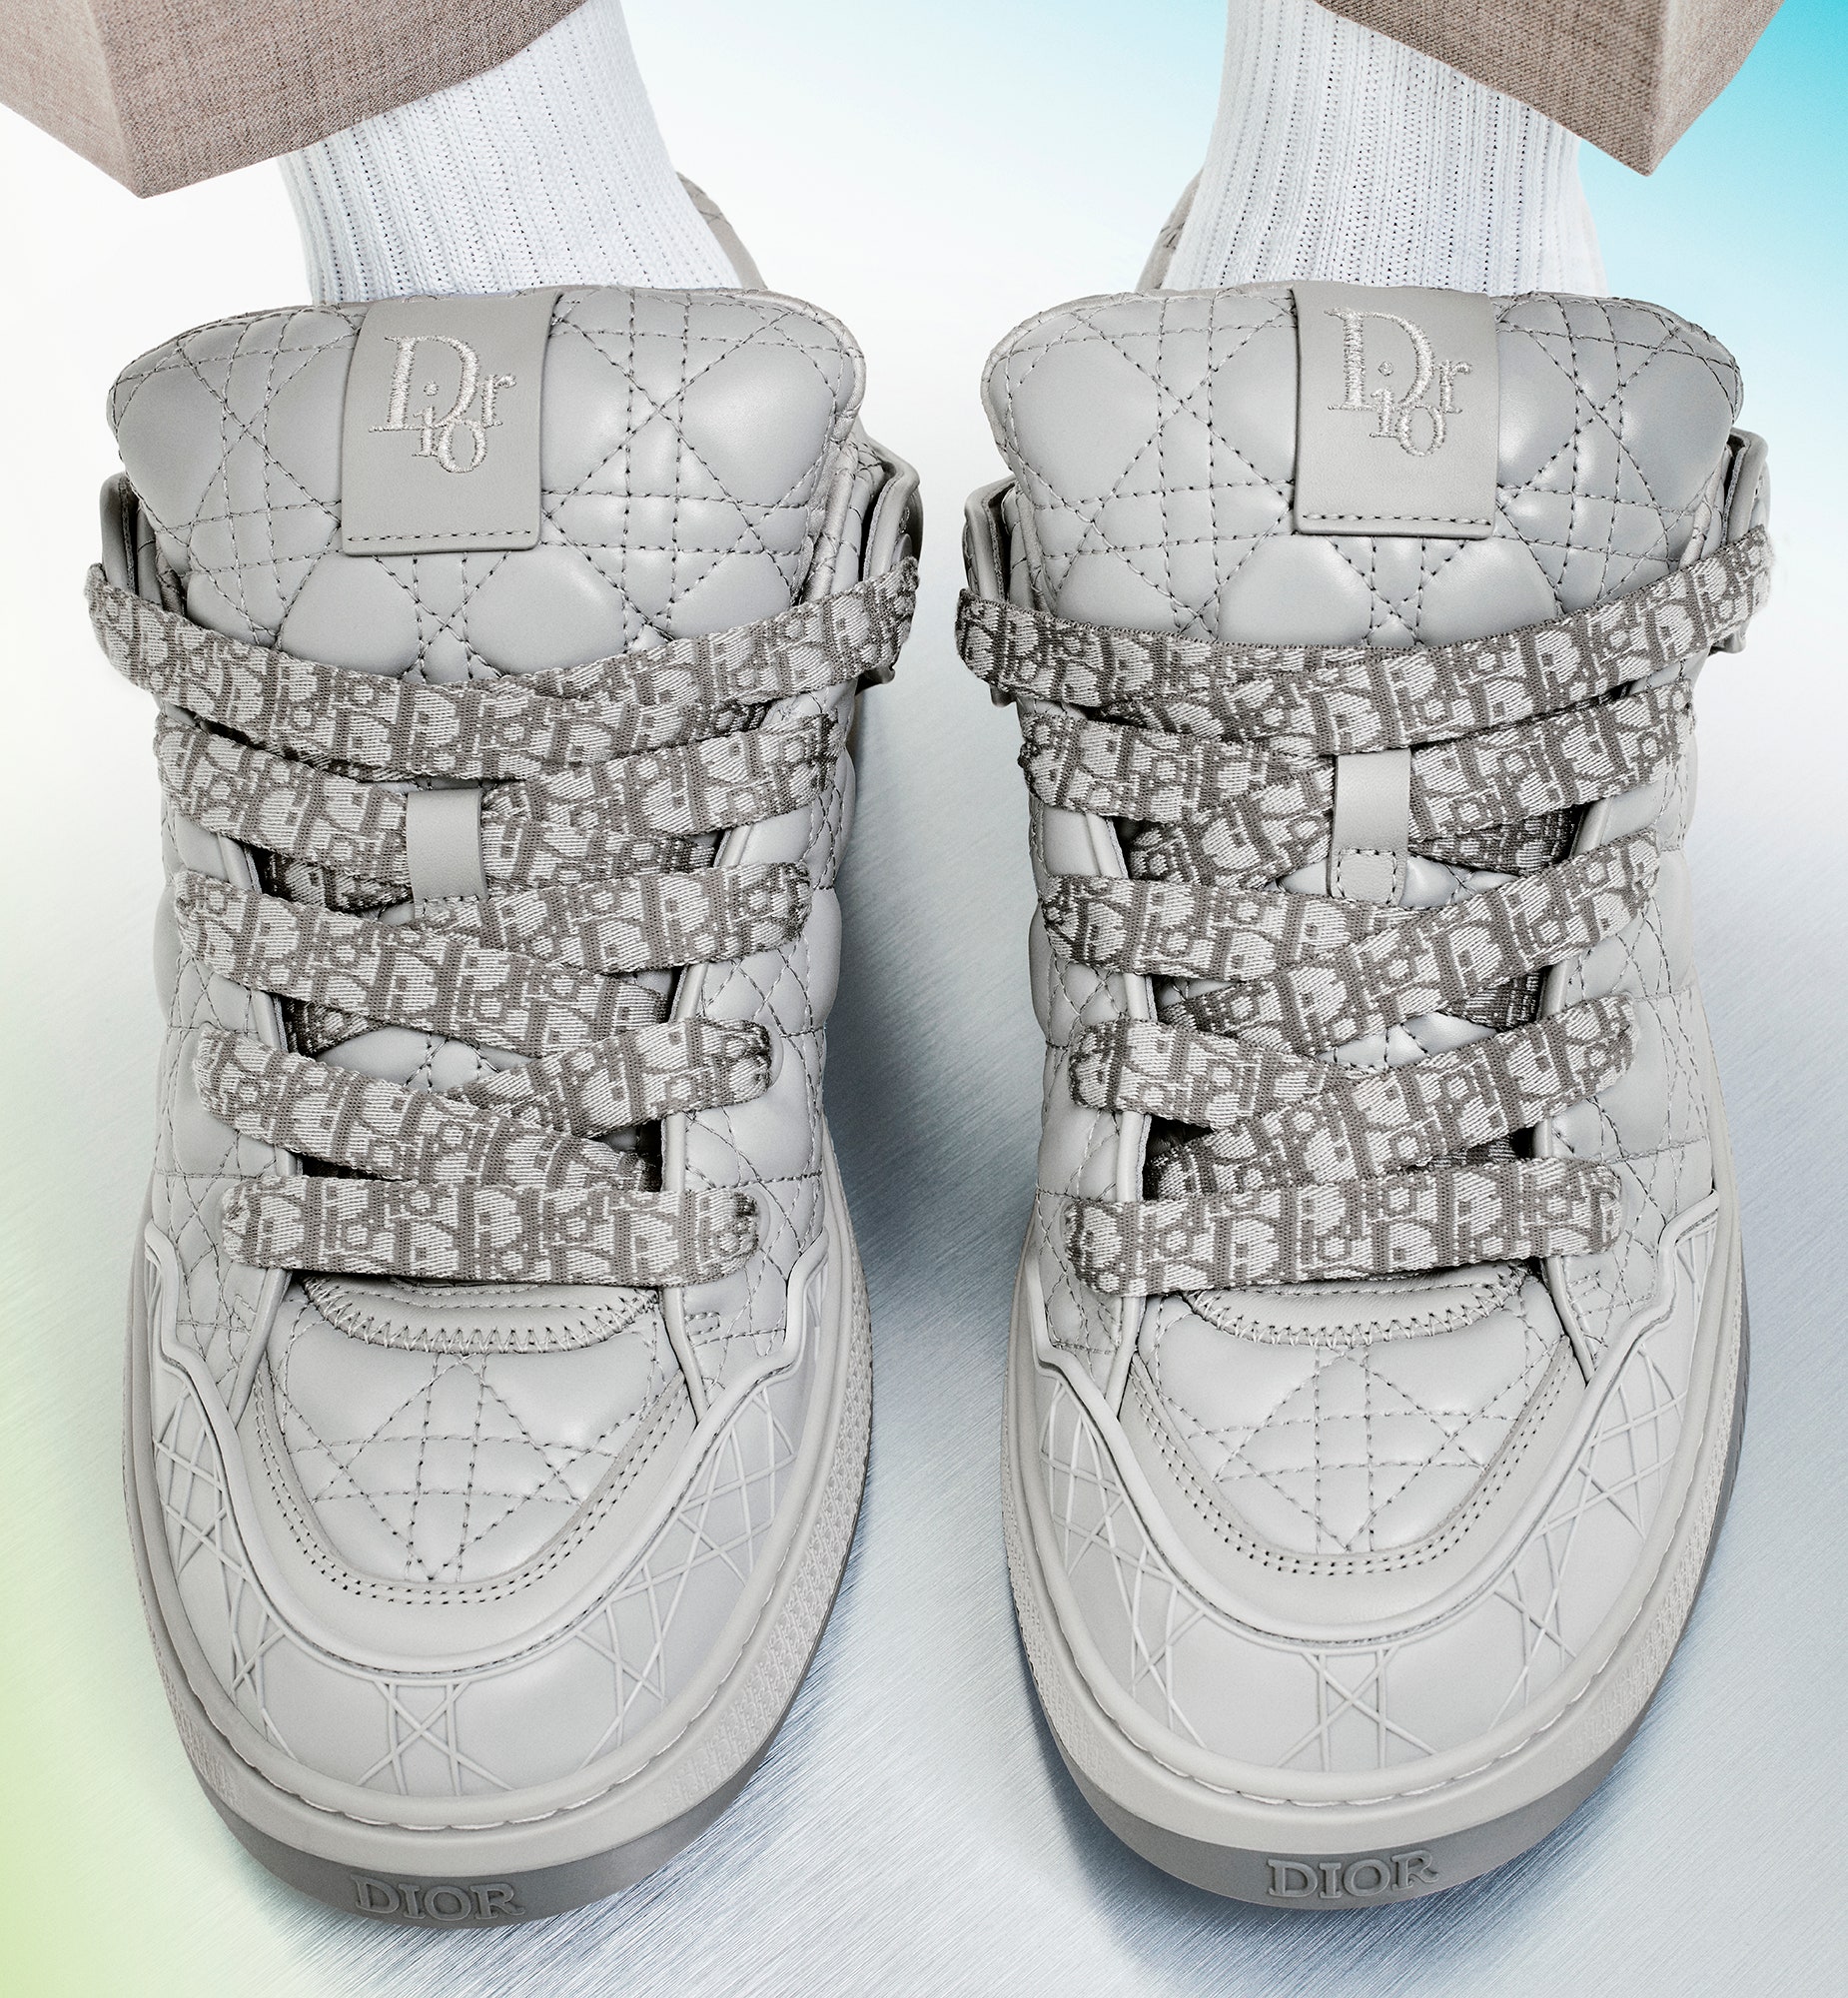 dior b9s: así son las nuevas zapatillas de lujo edición limitada de la maison